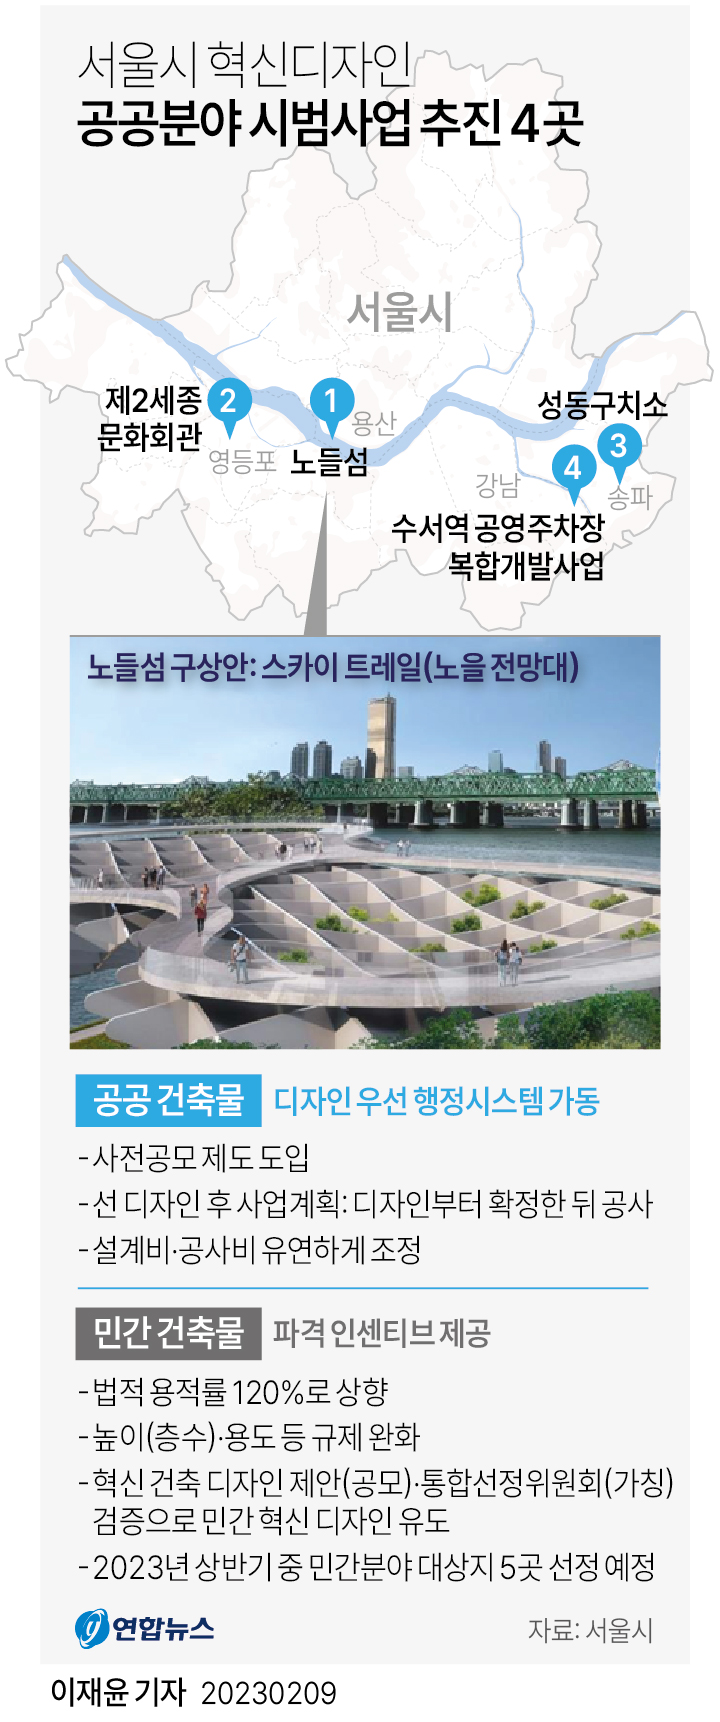 [그래픽] 서울시 혁신디자인 공공분야 시범사업 추진